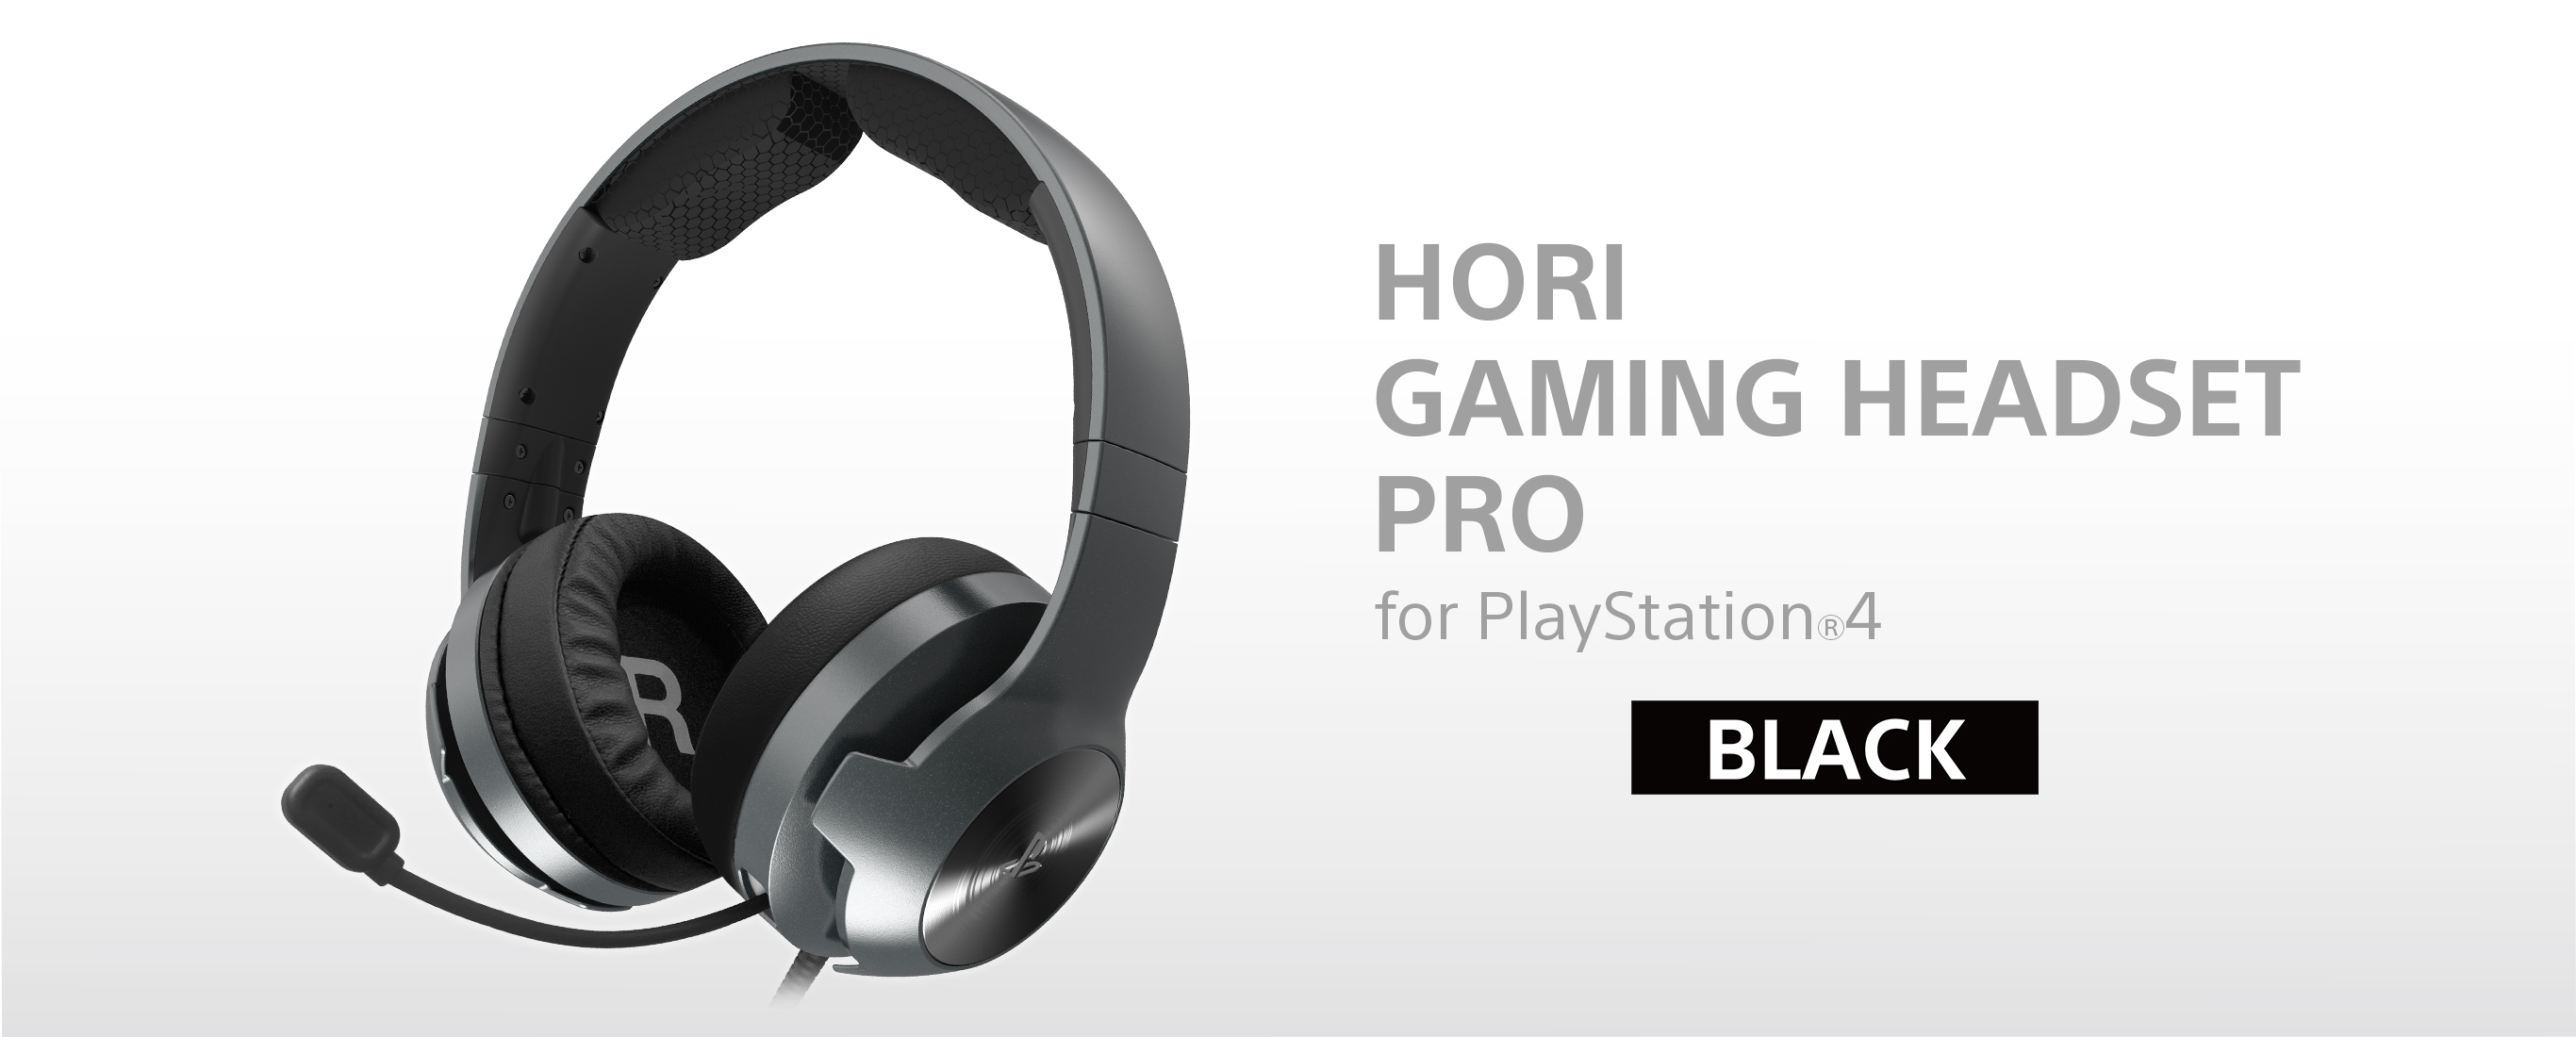 株式会社 HORI | ホリゲーミングヘッドセット プロ for PlayStation®4 